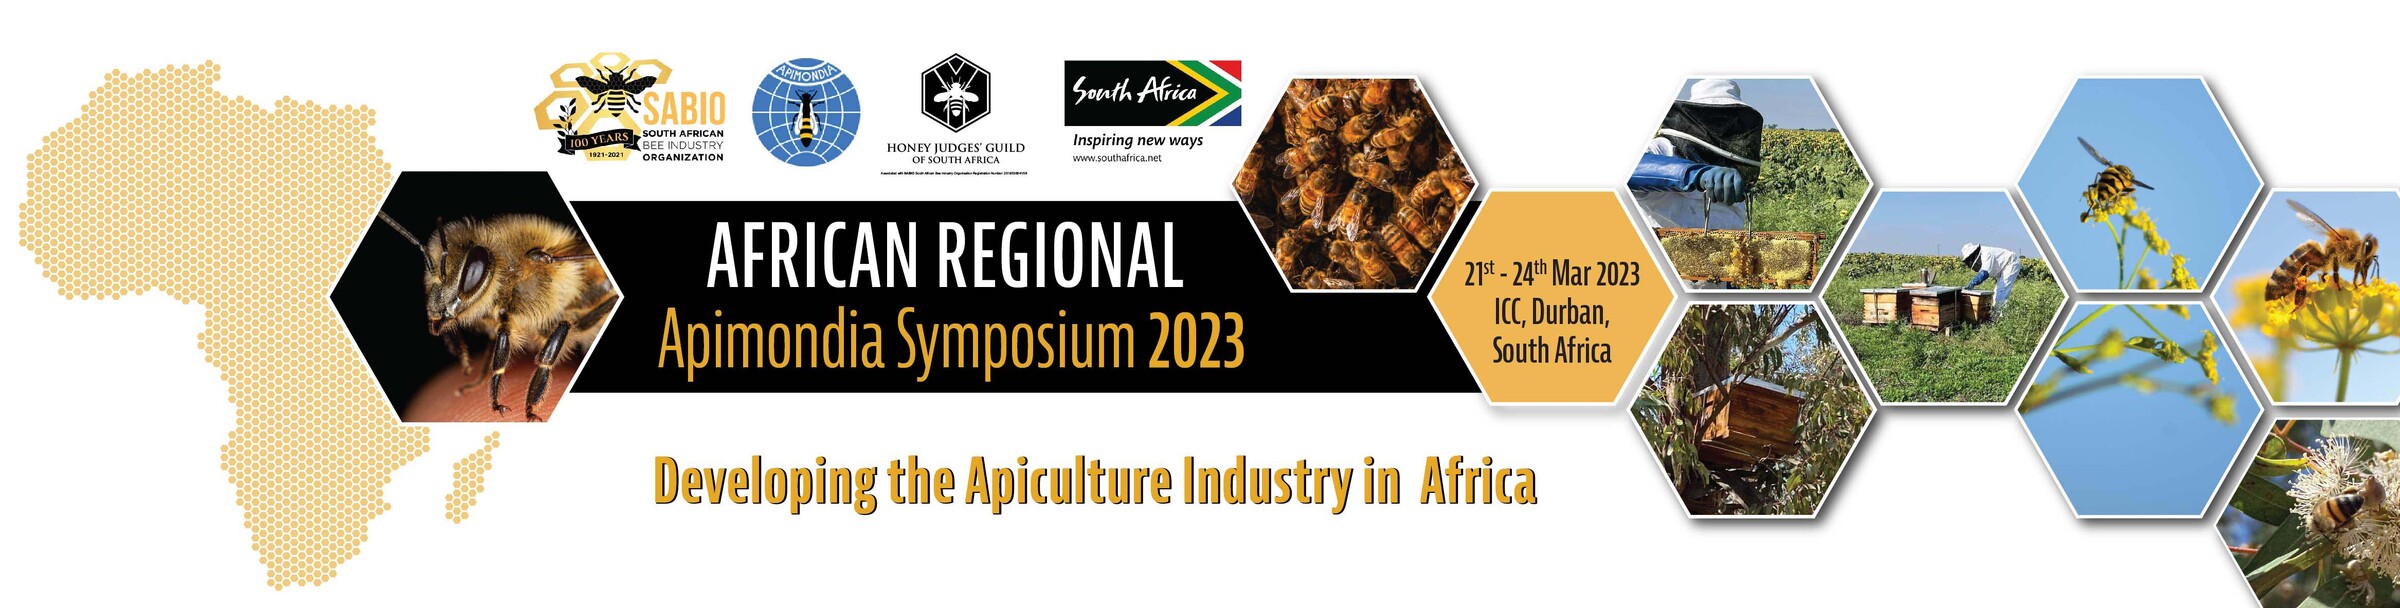 African Regional Apimondia Symposium 2023